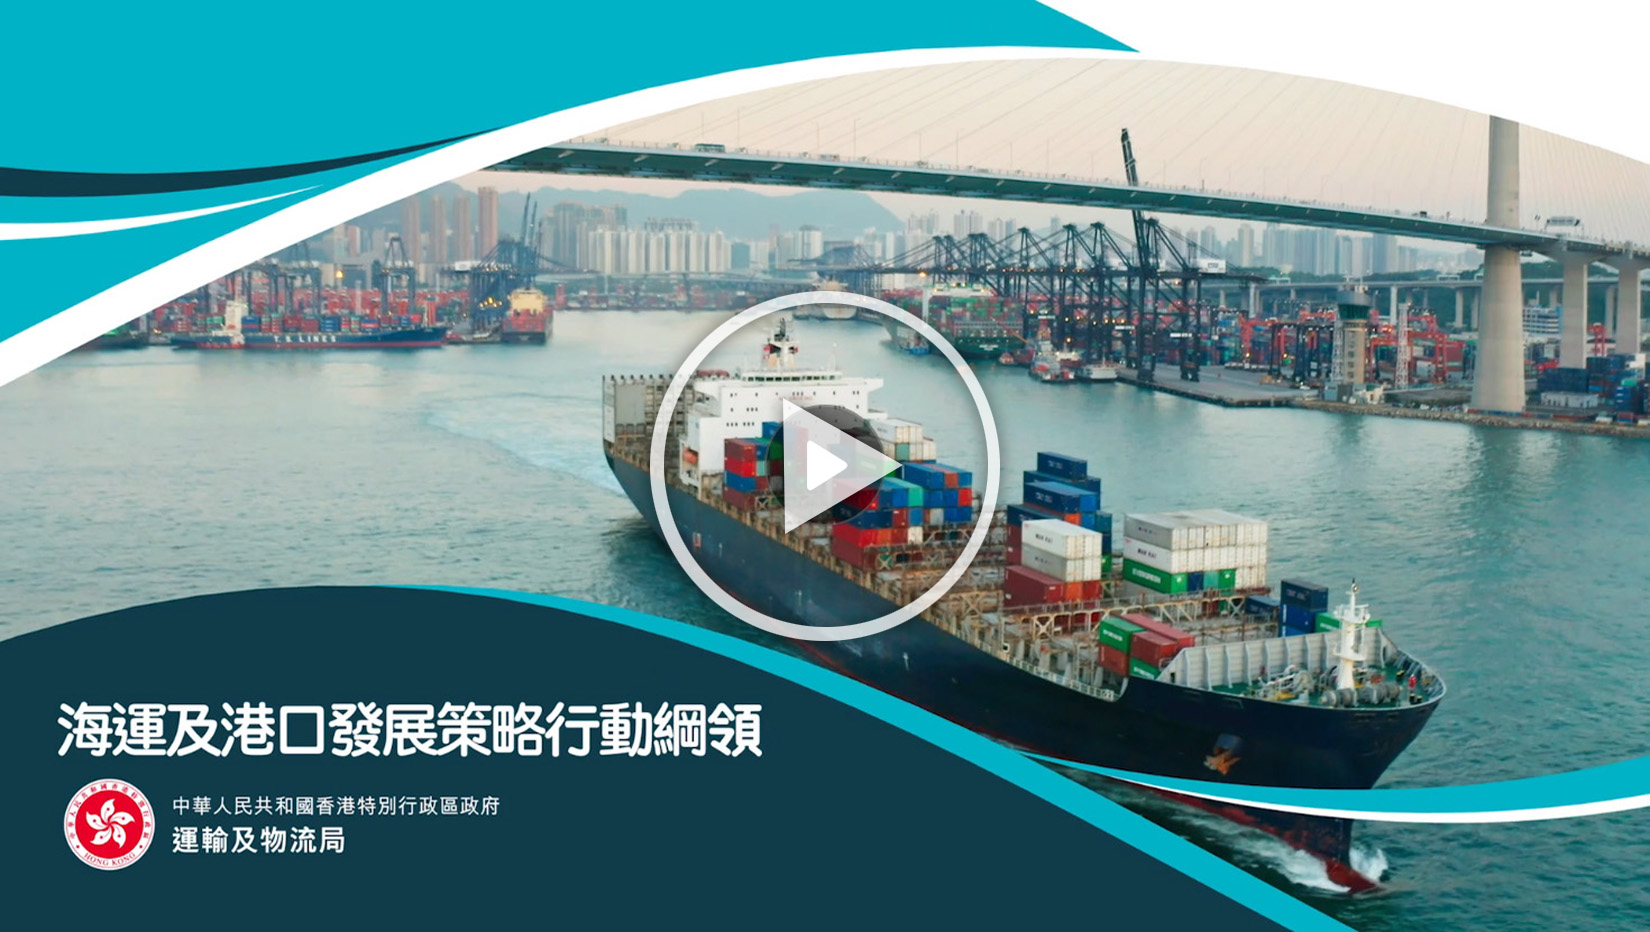 海運及港口發展策略行動綱領宣傳短片